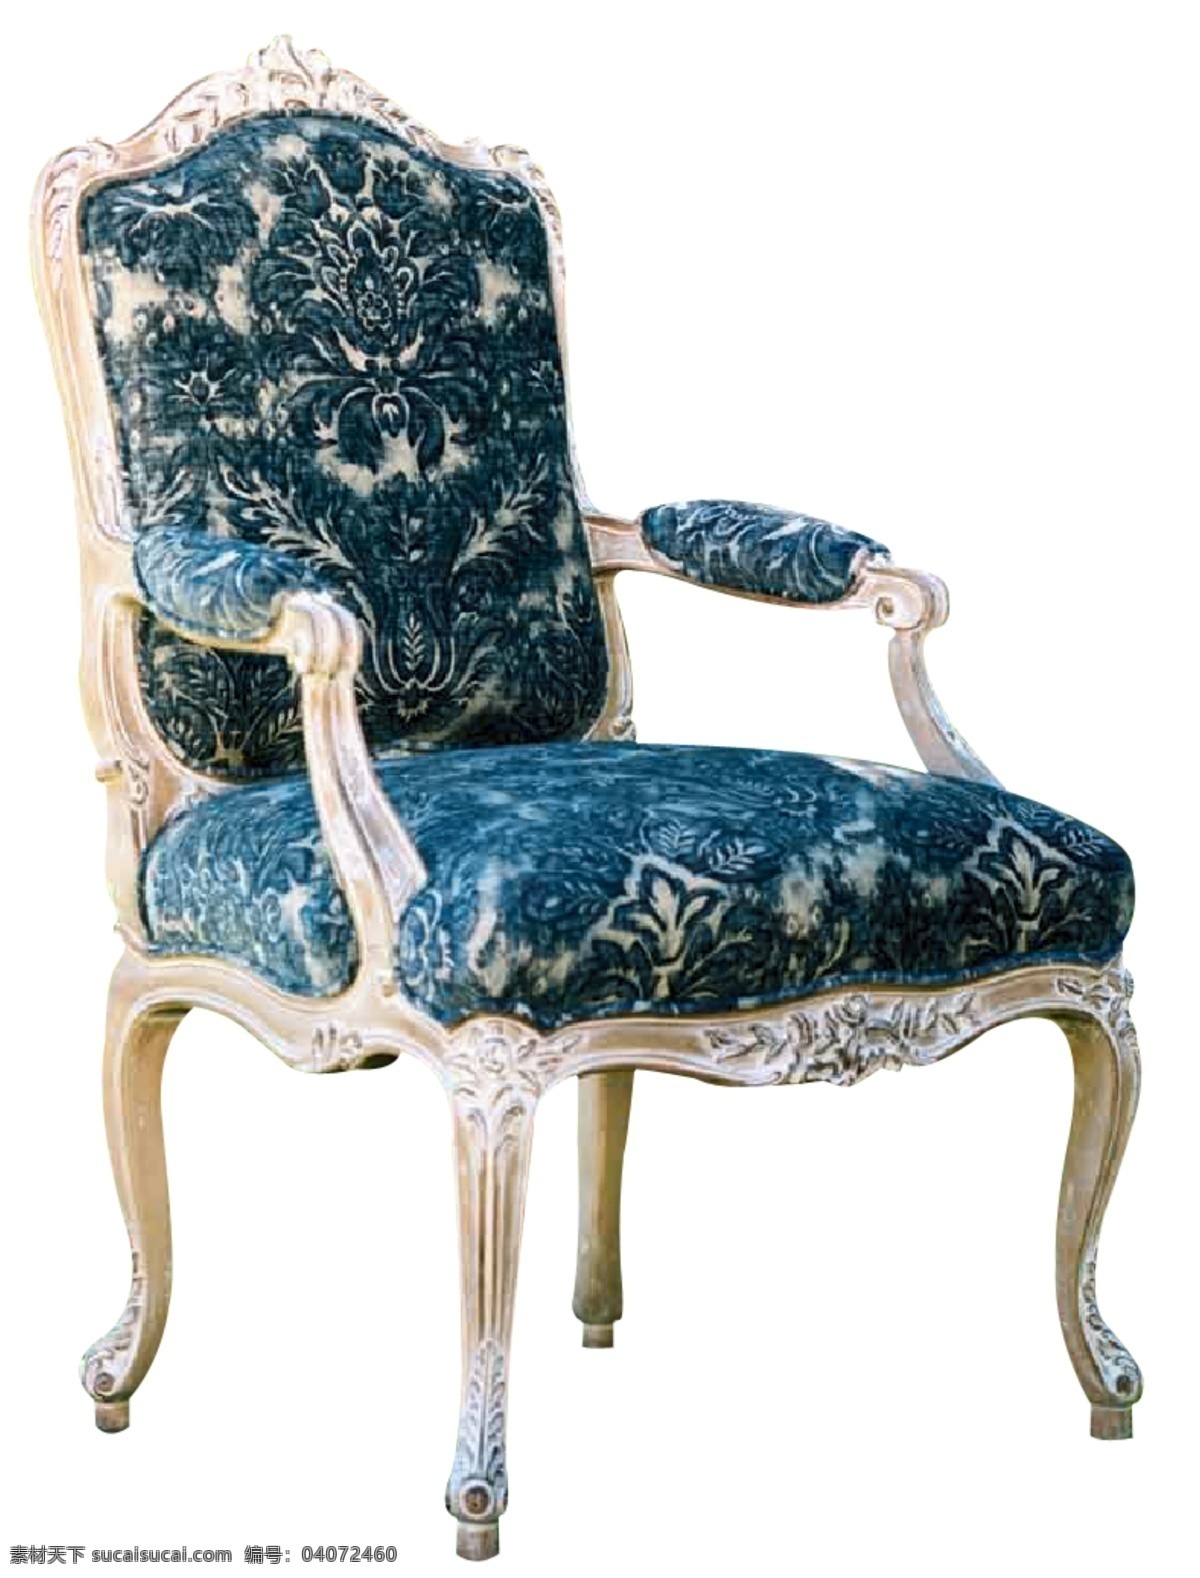 分层 psd素材 古典 精致 欧式 欧式沙发 沙发 椅子 模板下载 源文件库 装饰素材